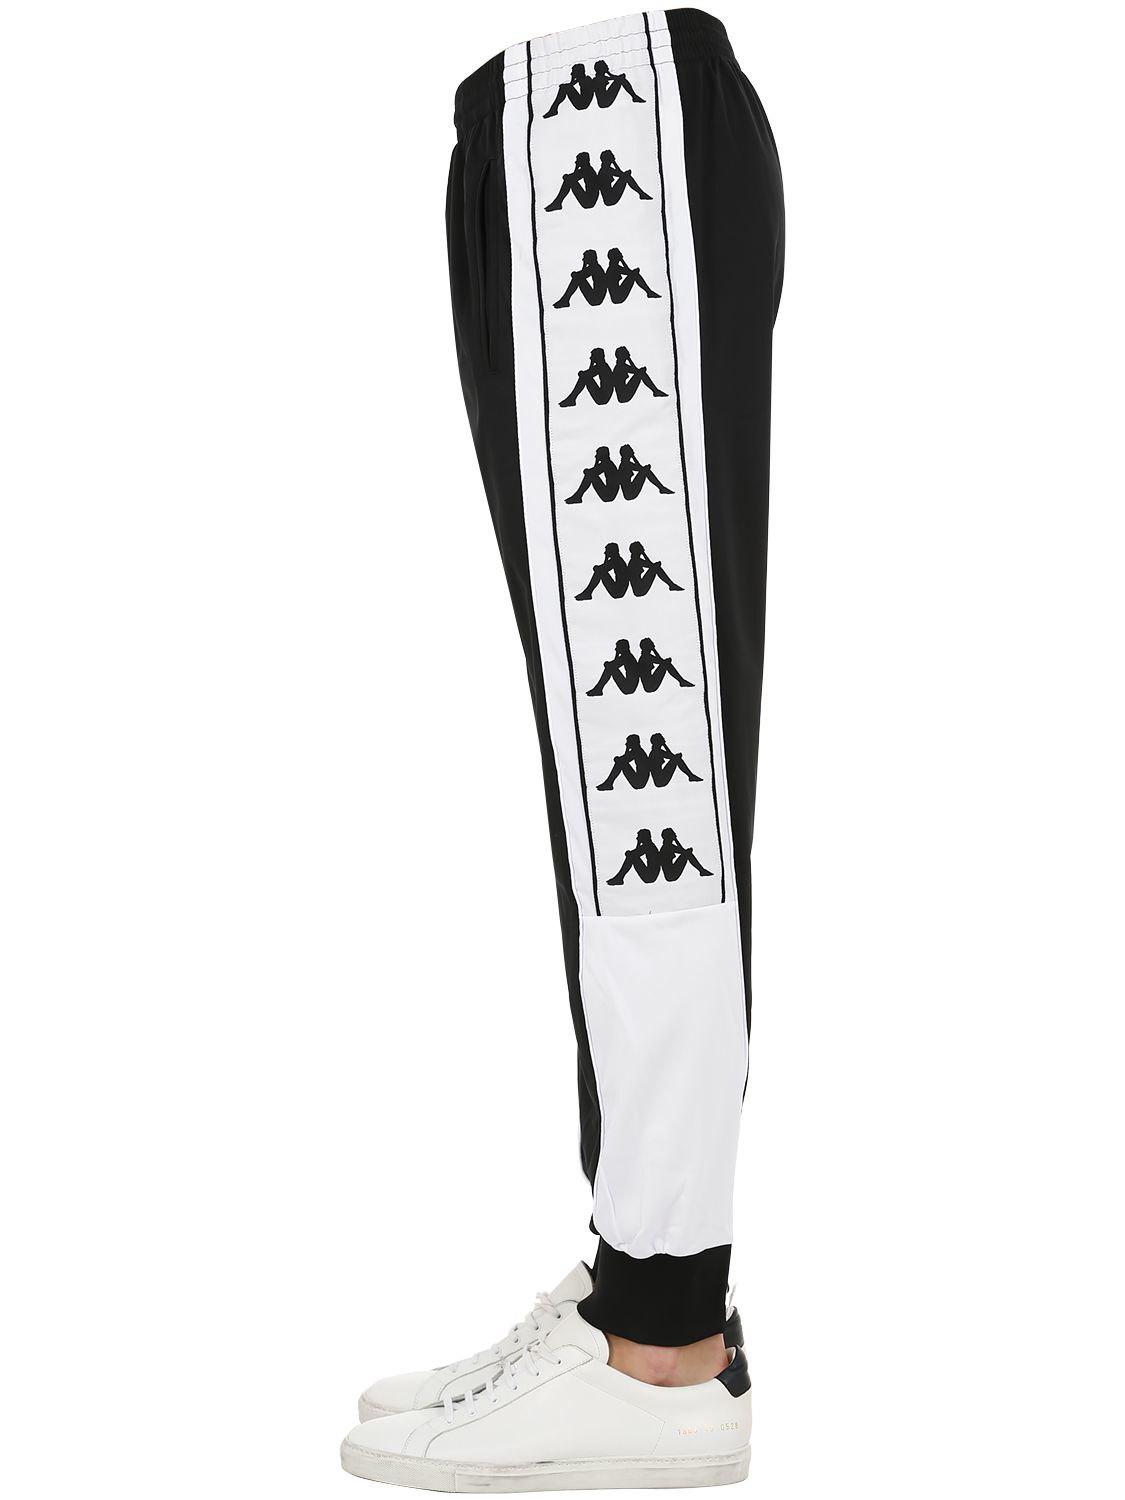 Lyst - Kappa Nylon Sweatpants W/logo Side Bands in Black for Men